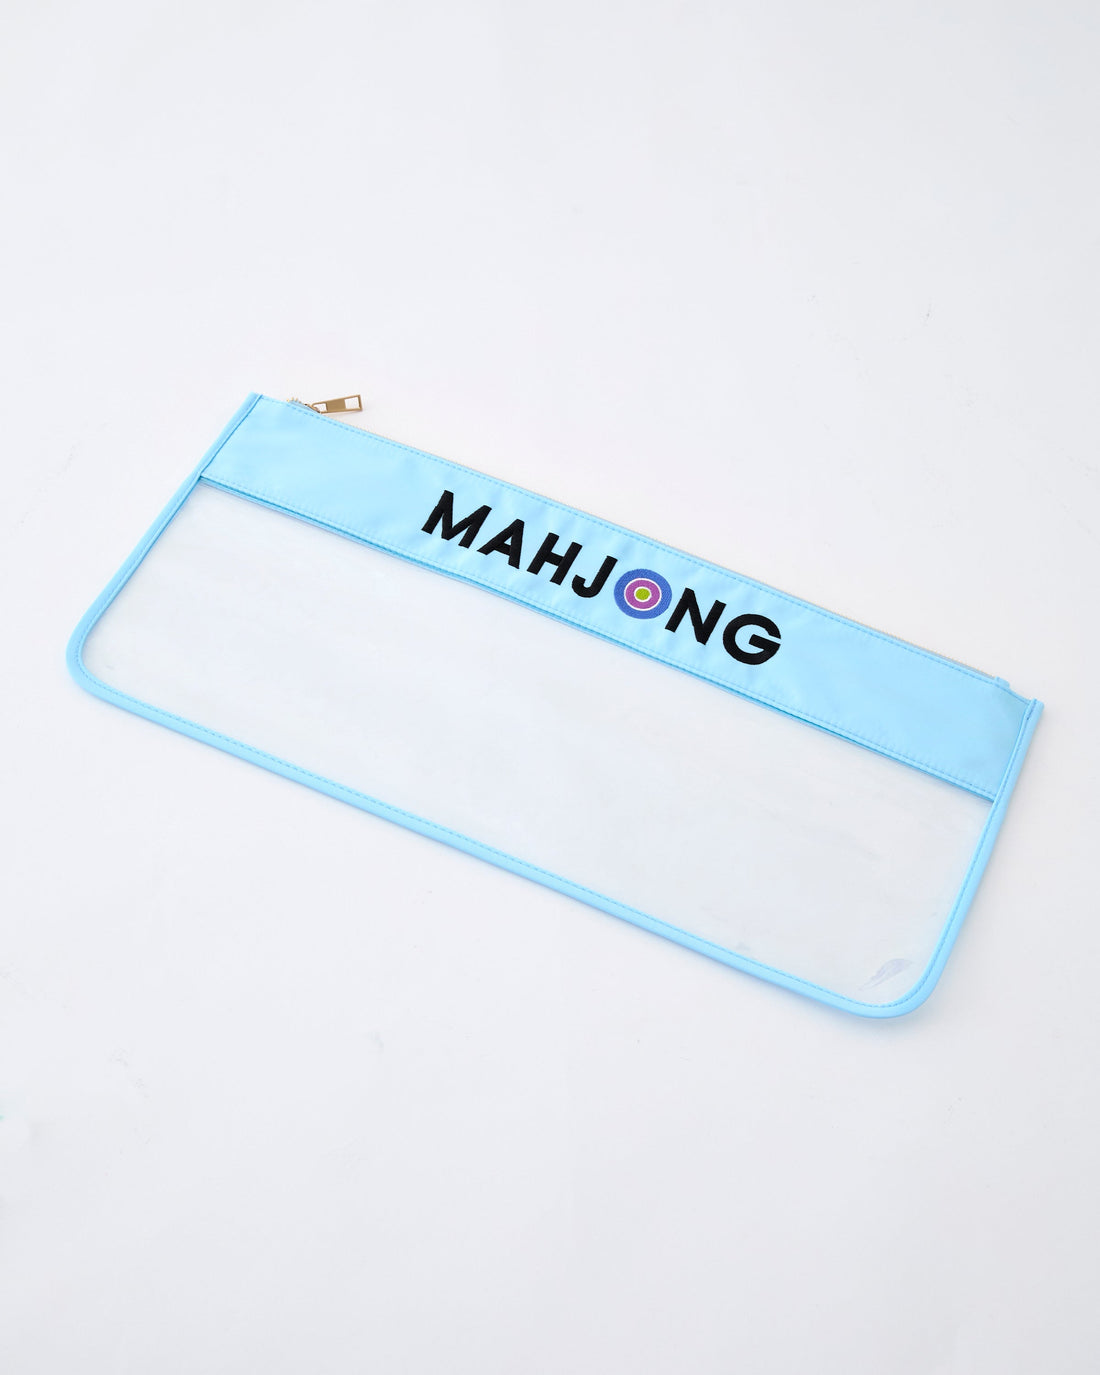 Light Blue Stitched Mahjong - Oh My Mahjong